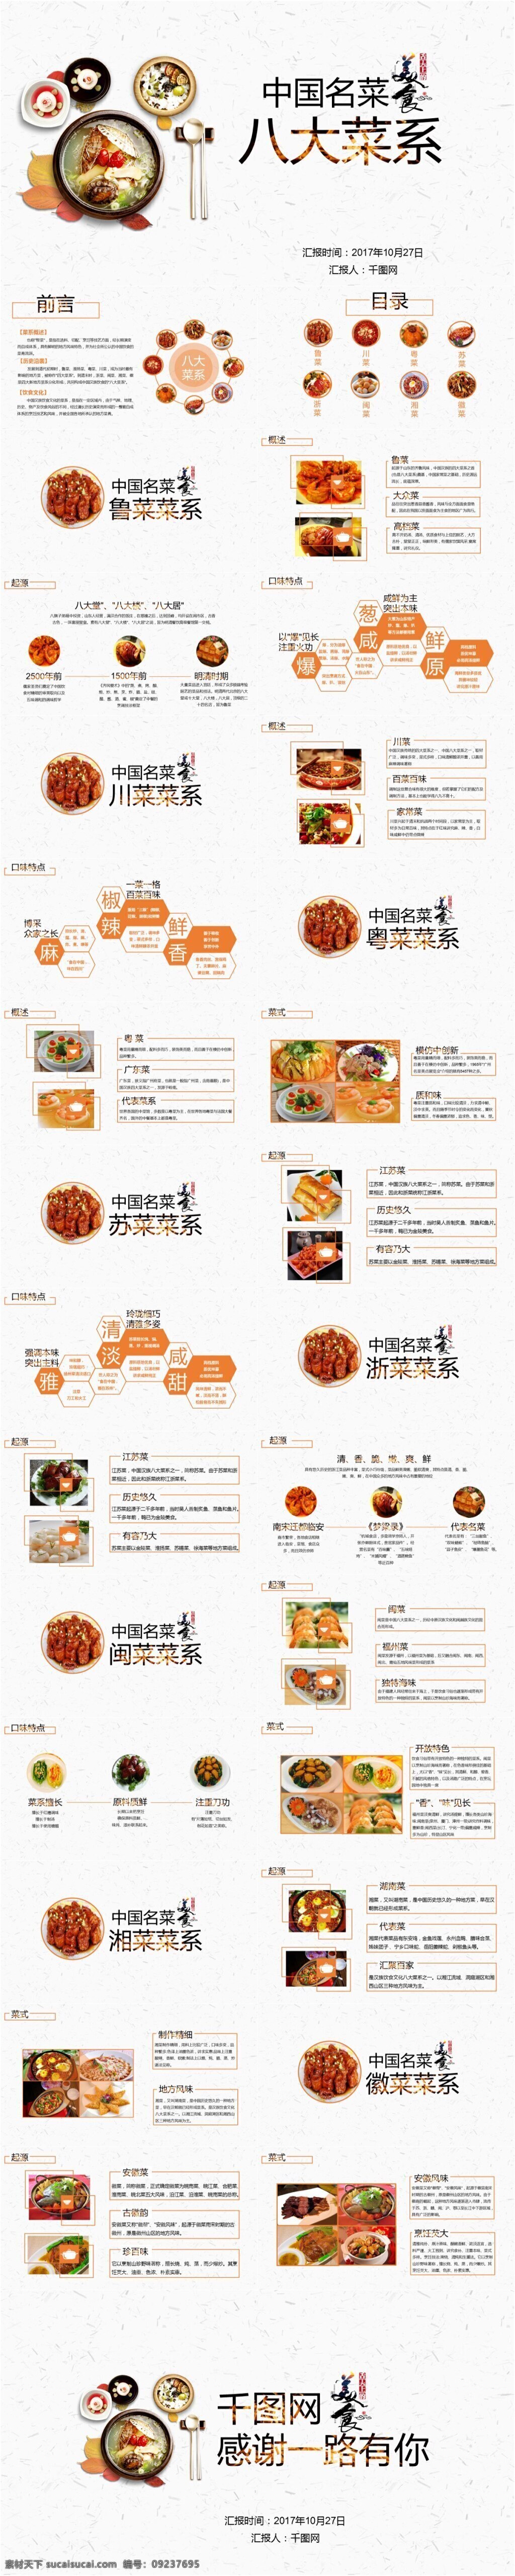 中国 八大菜系 模板 美食 餐饮 ppt模板 推荐 实用 通用 高端